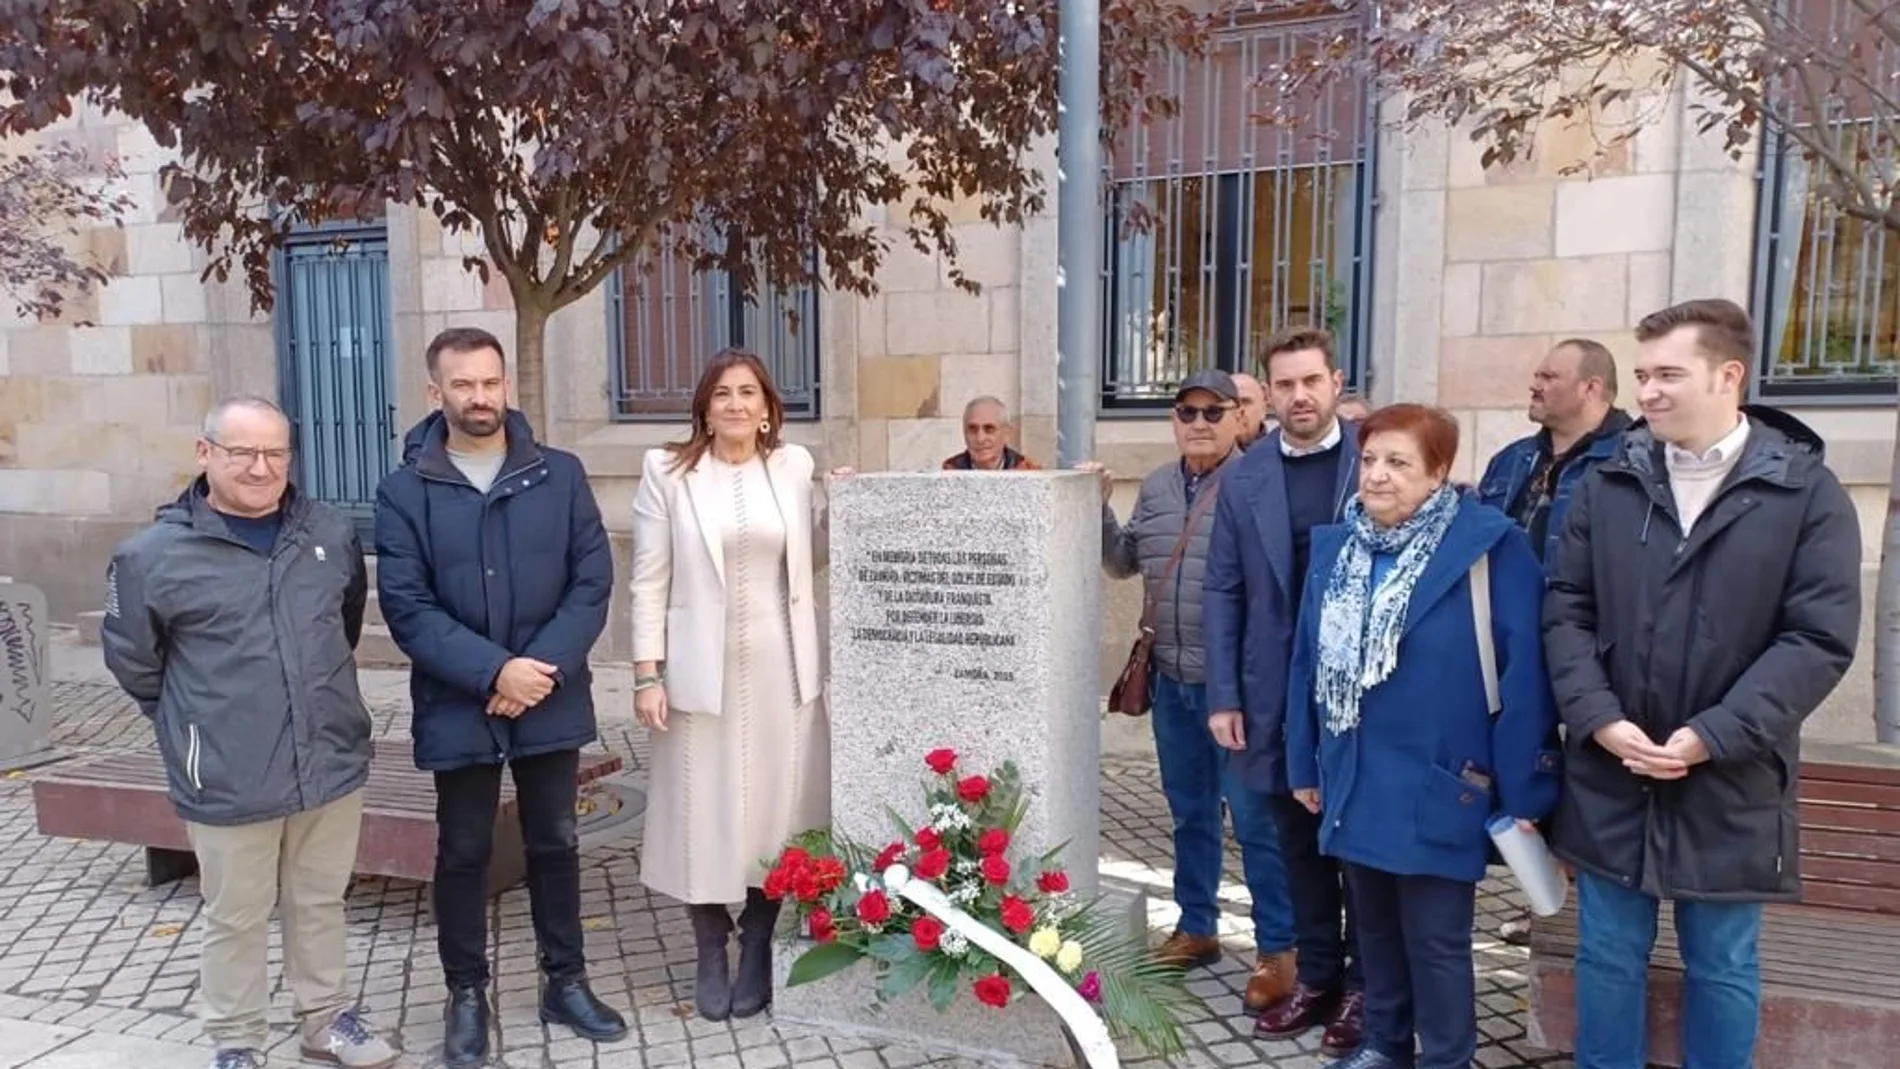 Ana Sánchez y Antidio Fagúndez, durante el homenaje a a los represaliados por el franquismo en Zamora